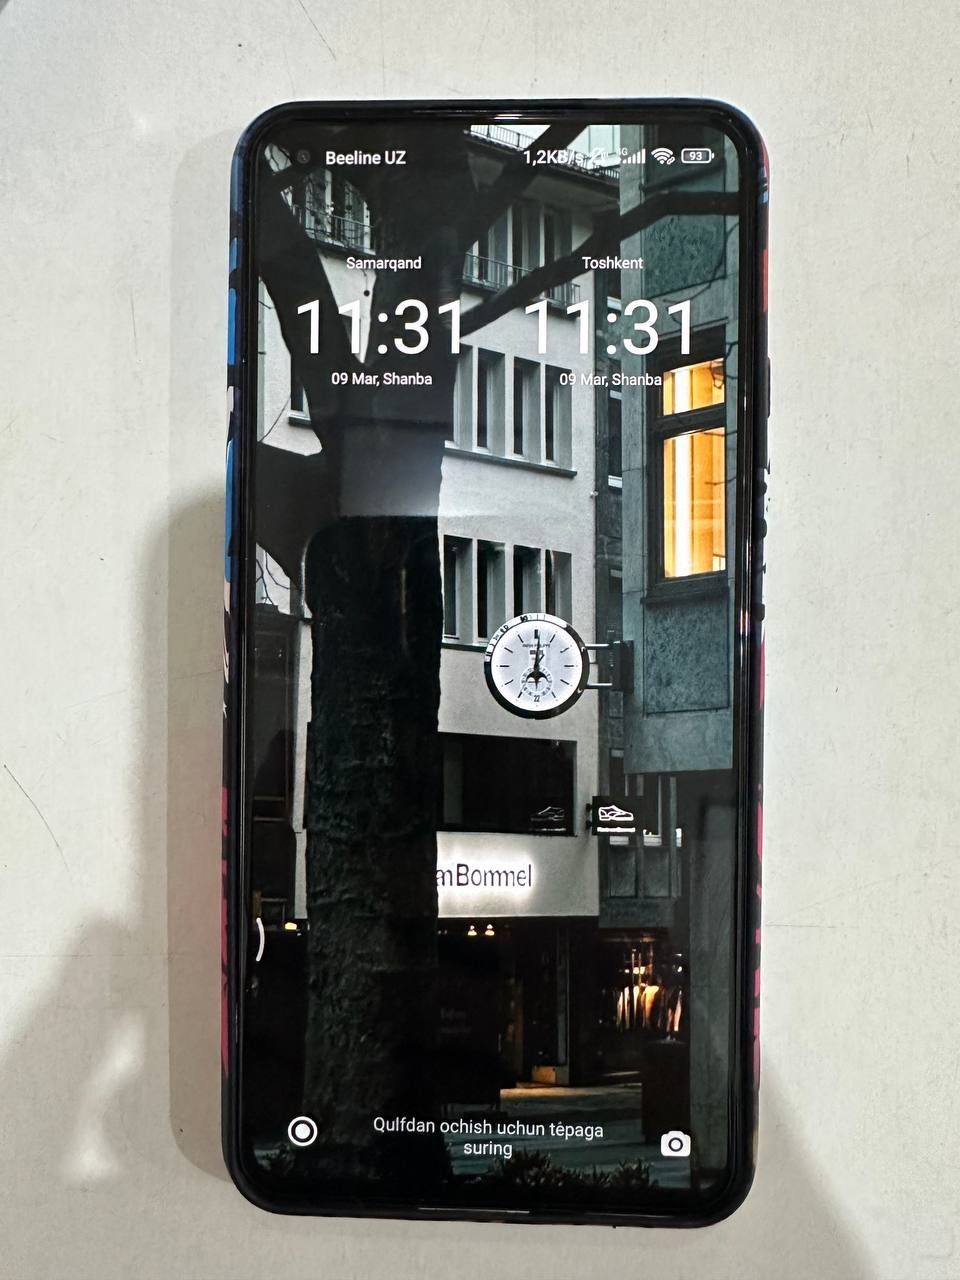 Xiaomi 11 lite 5G NE